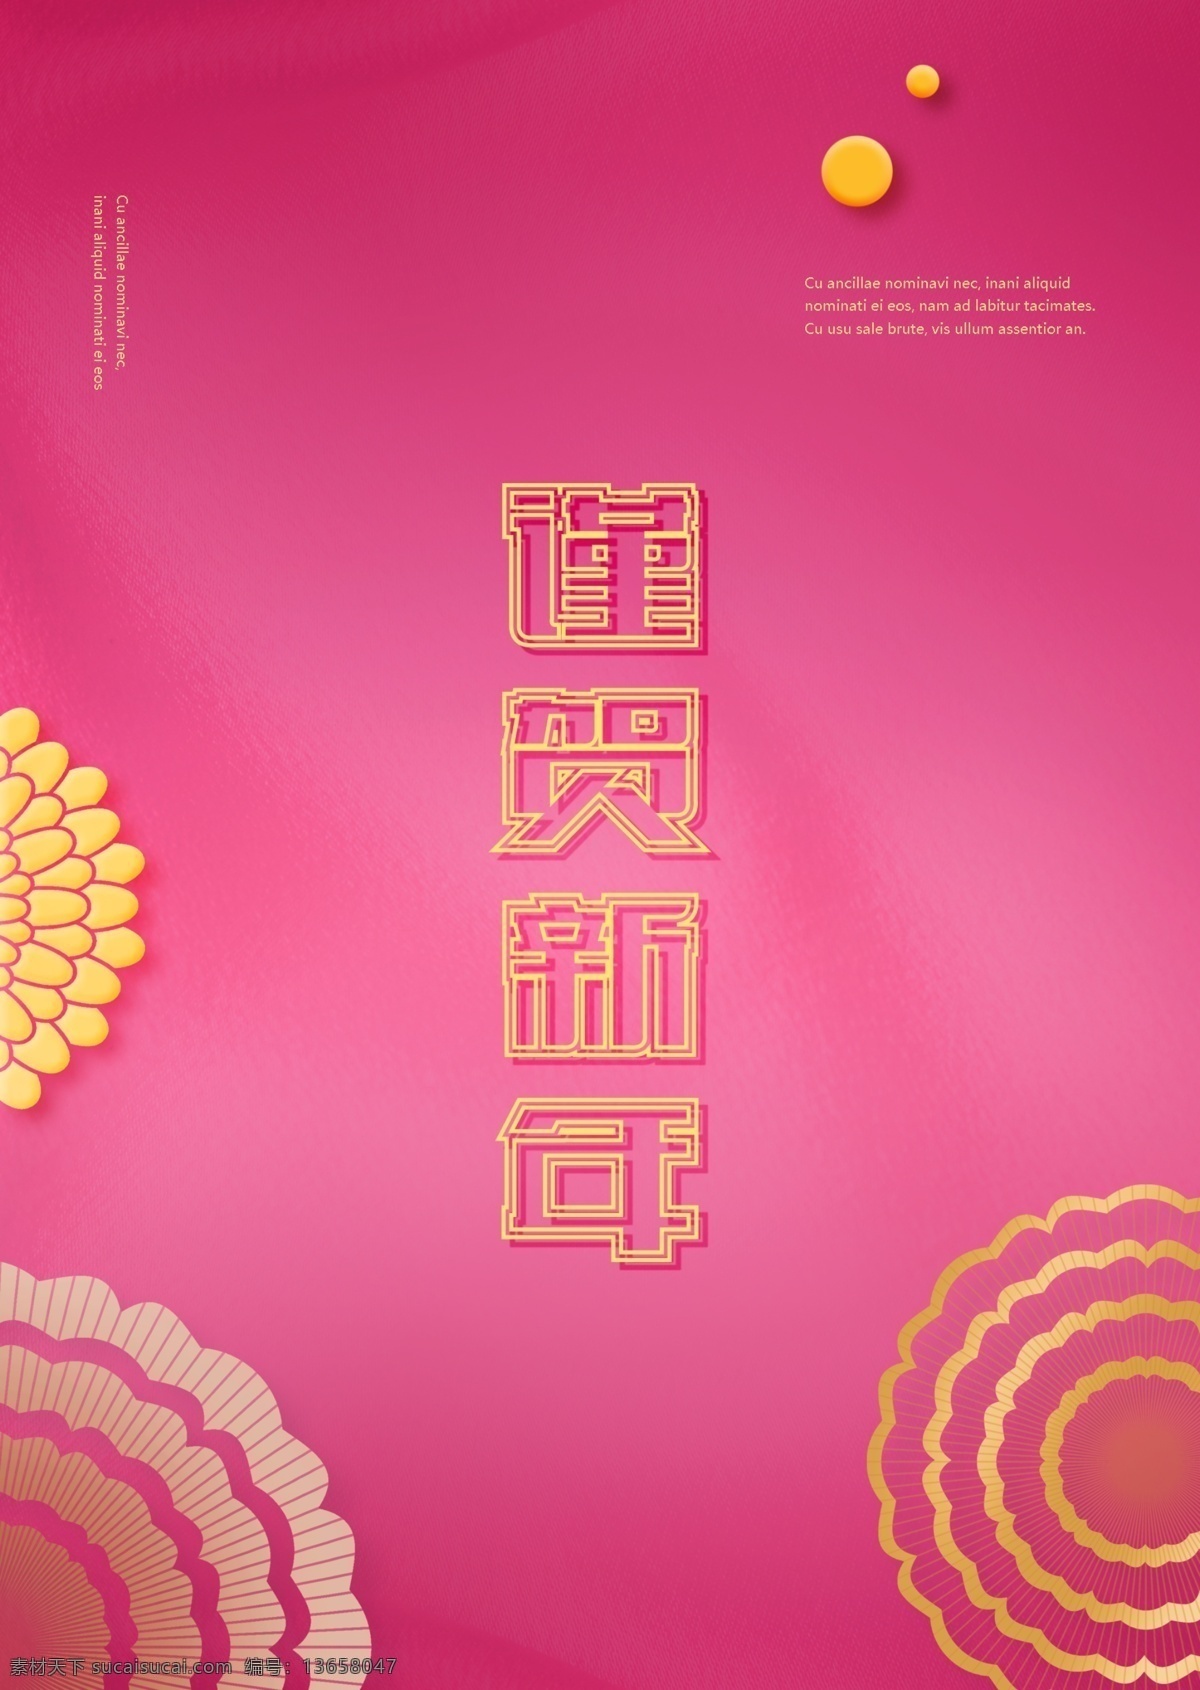 粉色 金色 洋 传统 中国 新年 节日 海报 毛 板 肝药 金色的图案 红色 春节 墨水 庆典 祝贺 时装 新浪网